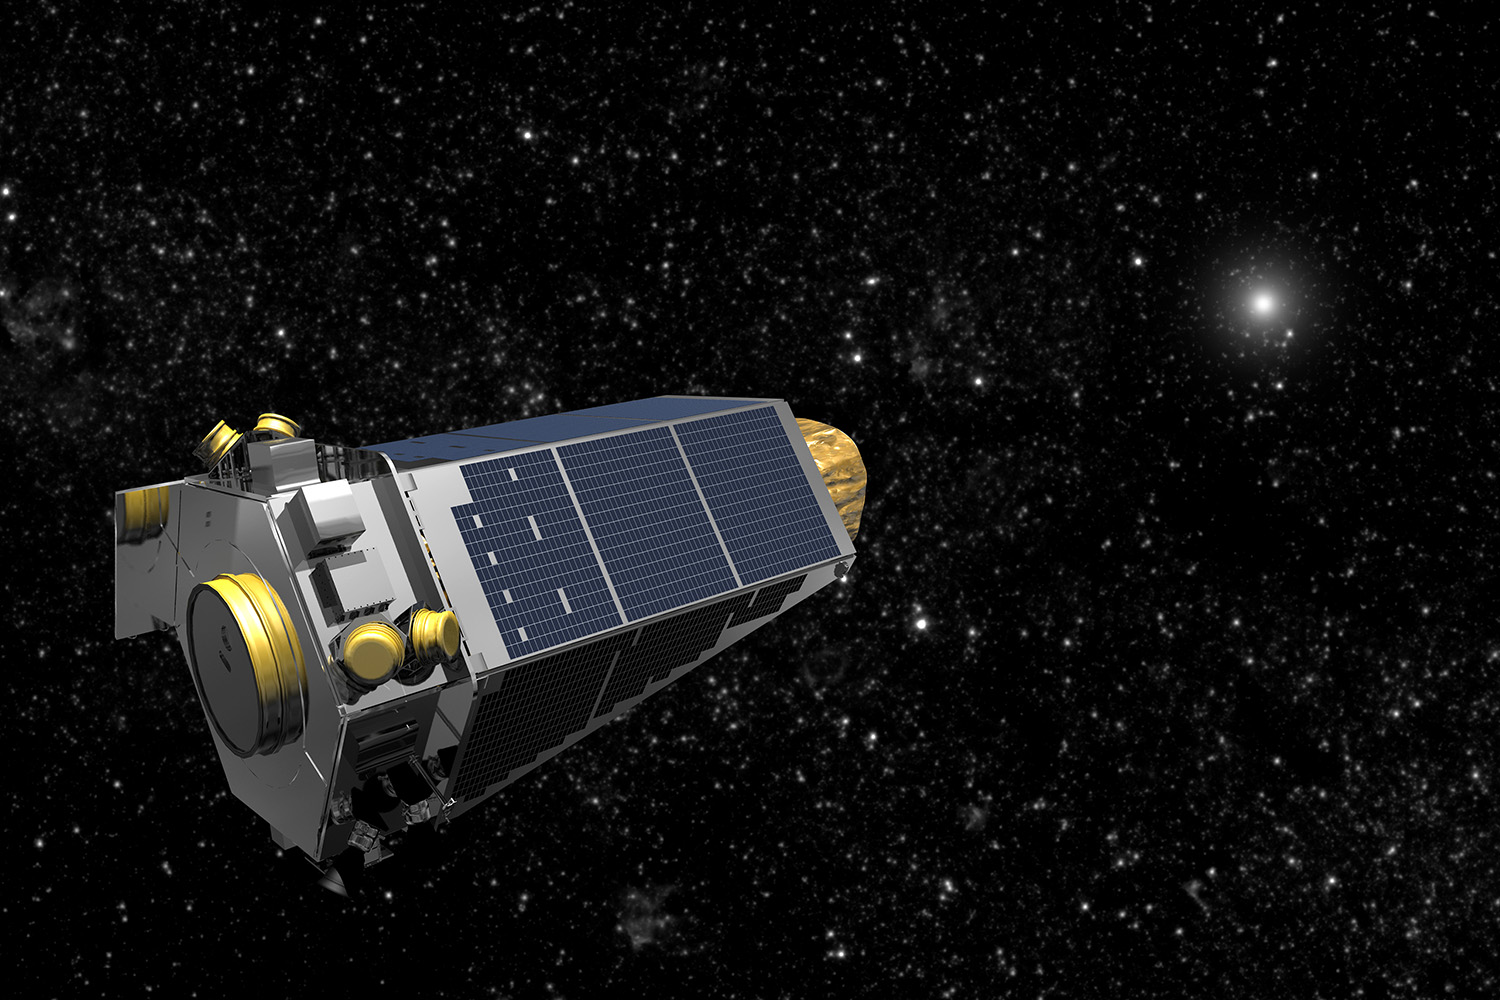 La NASA recupera contacto con el telescopio espacial Kepler tras varios días en 'modo de emergencia'